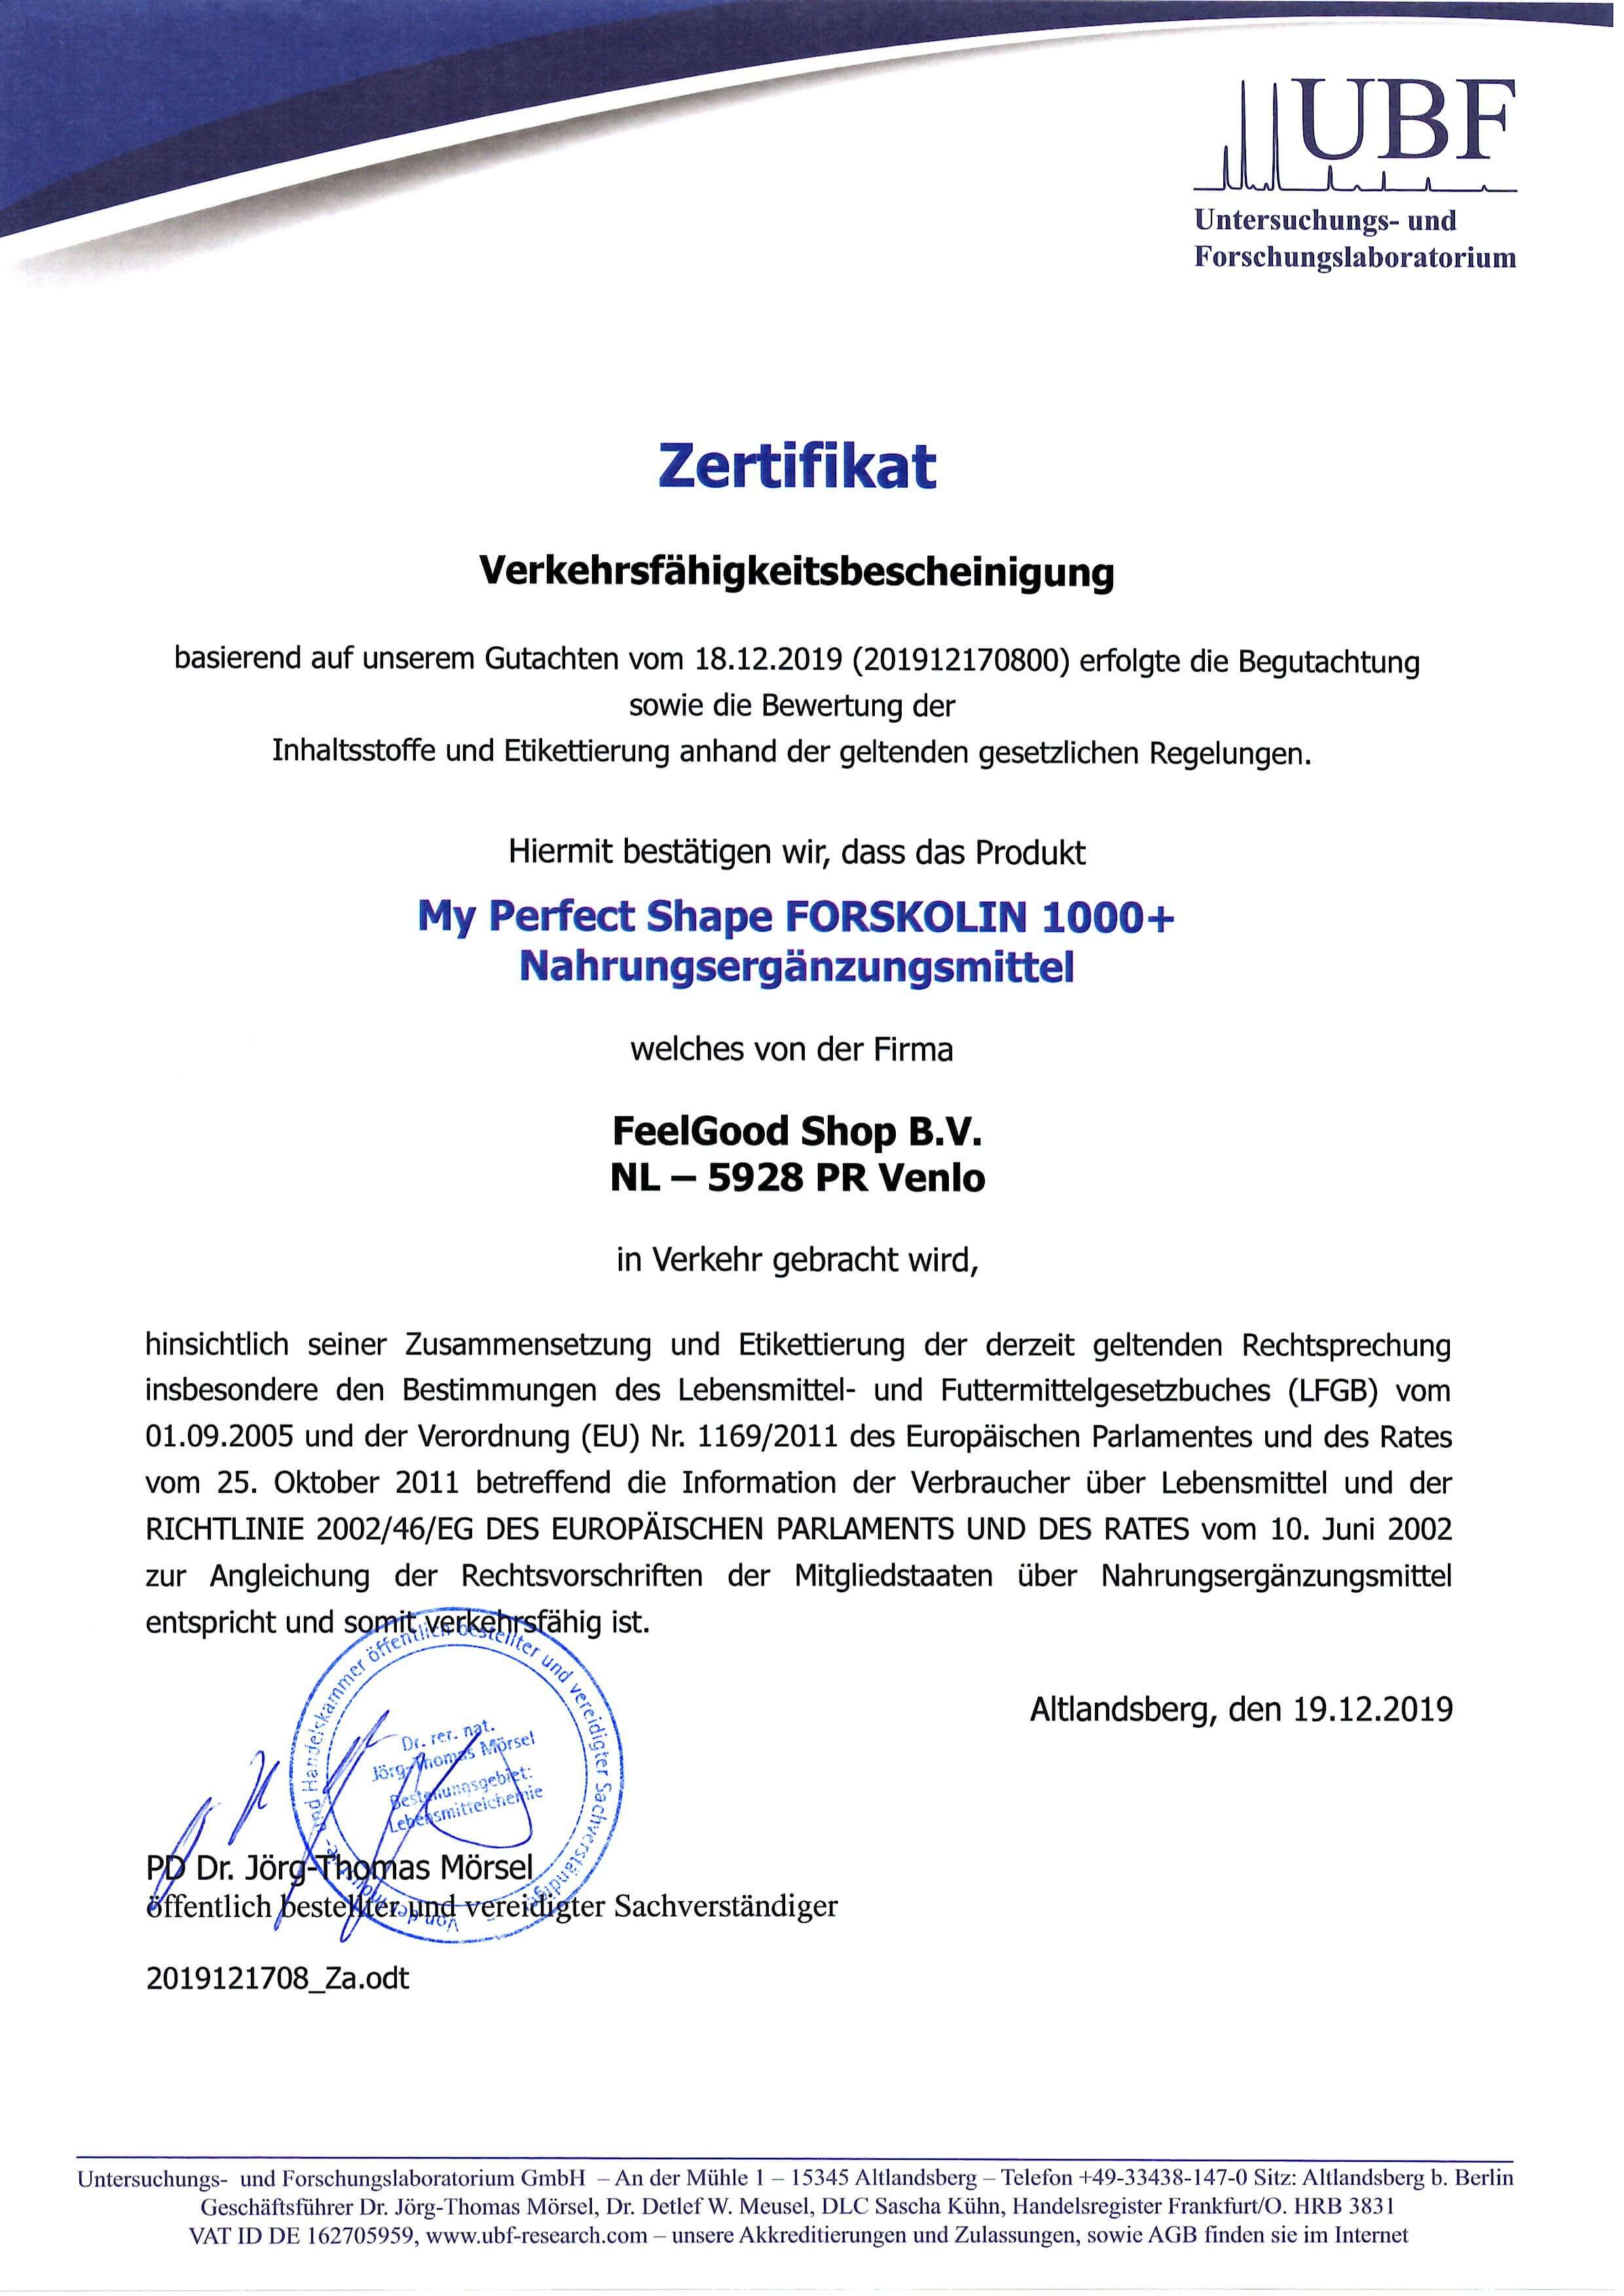 FORSKOLIN 1000+ Zertifikat